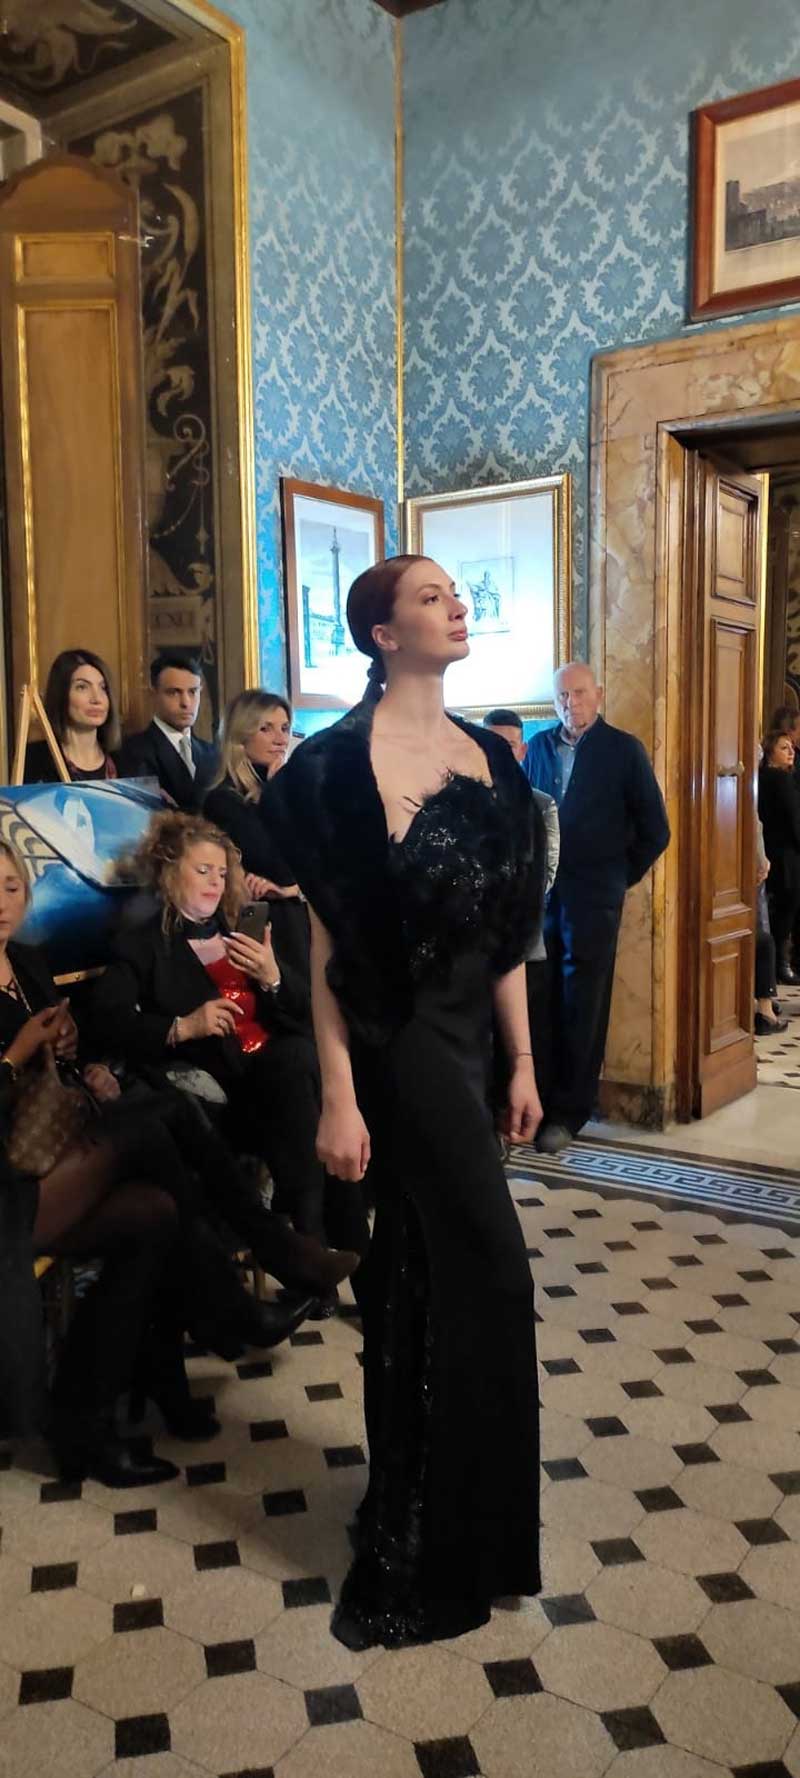 Sfilata abiti donna modelle a palazzo Ferrajoli - abito scuro in fantasia femminile